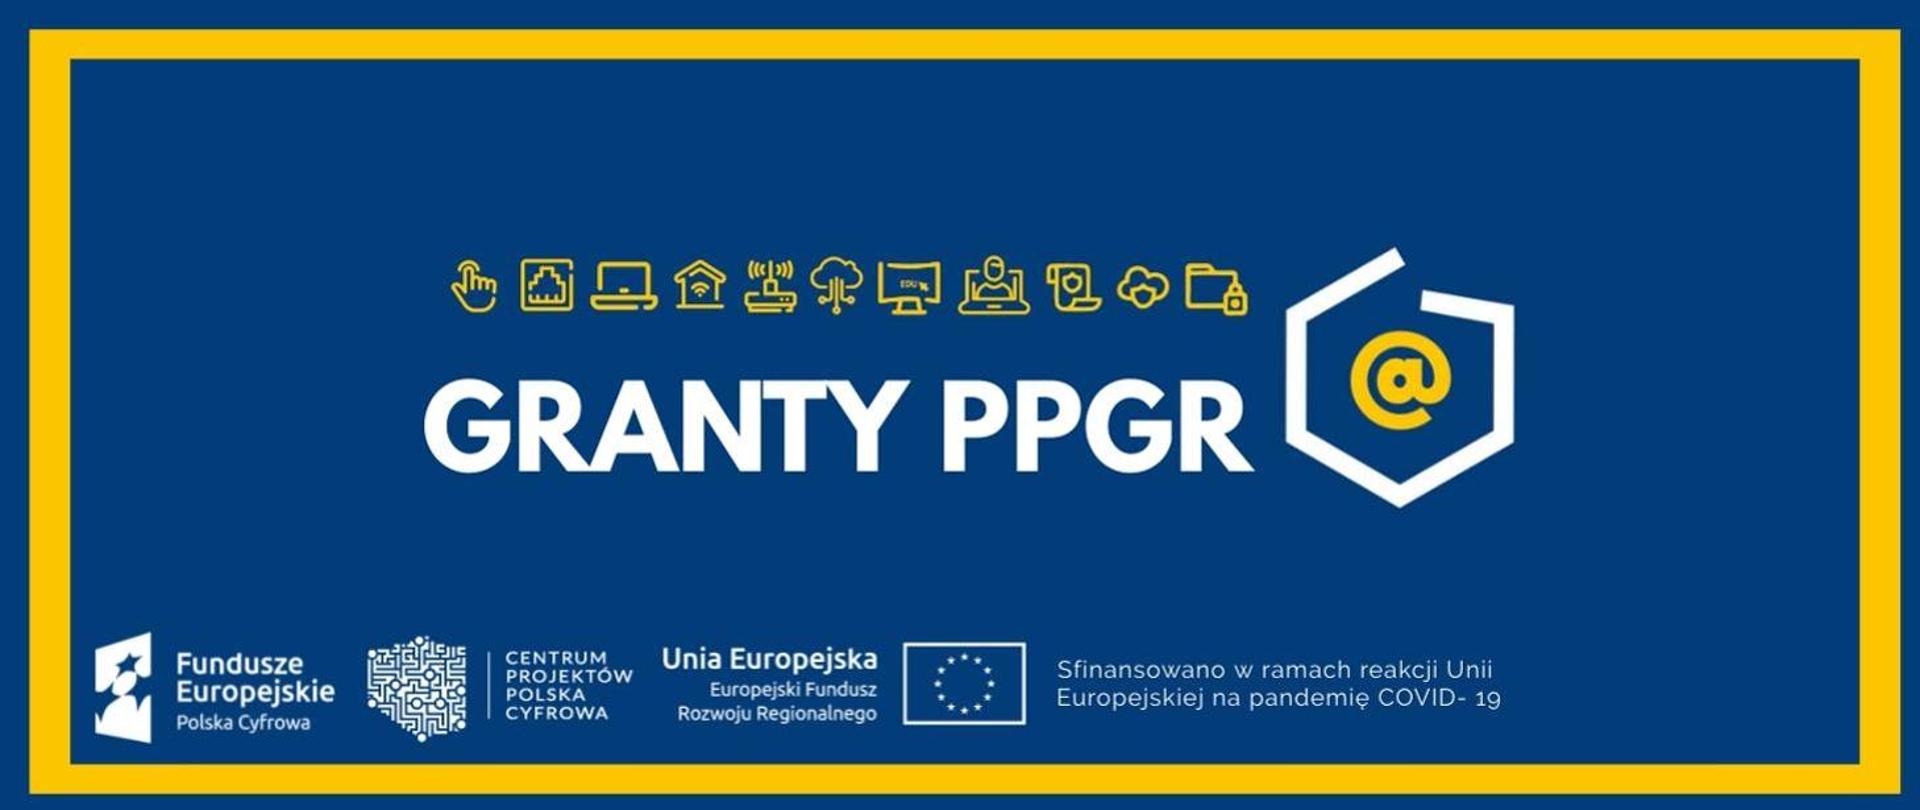 Informacja o realizowanym projekcie grantowym. Biały napis Granty PPGR na granatowym tle zawierający ikony multimedialne oraz logotypy funduszy europejskich.